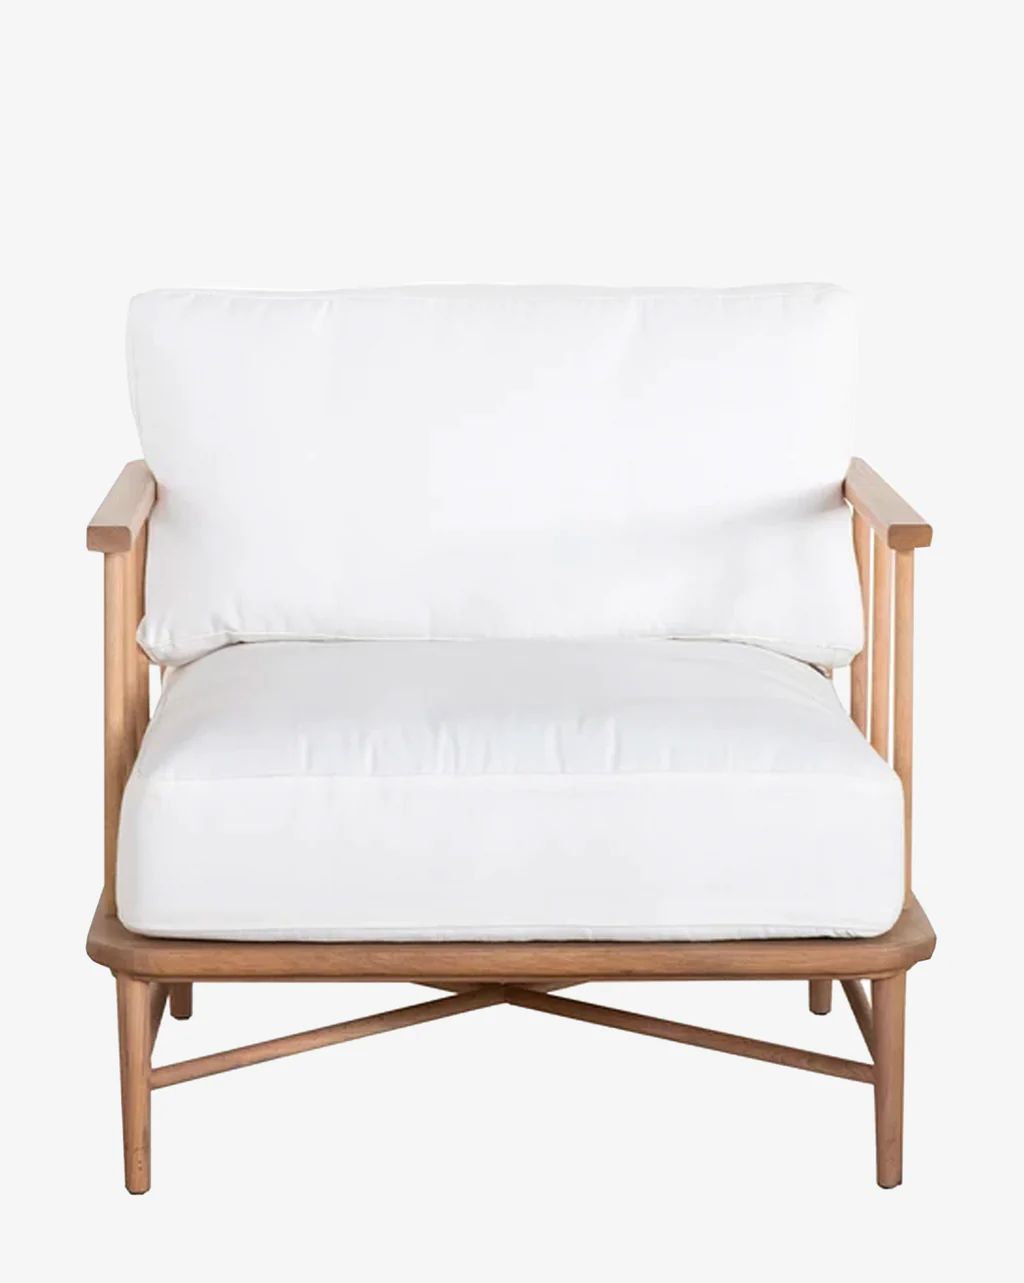 Alma Chair | McGee & Co.